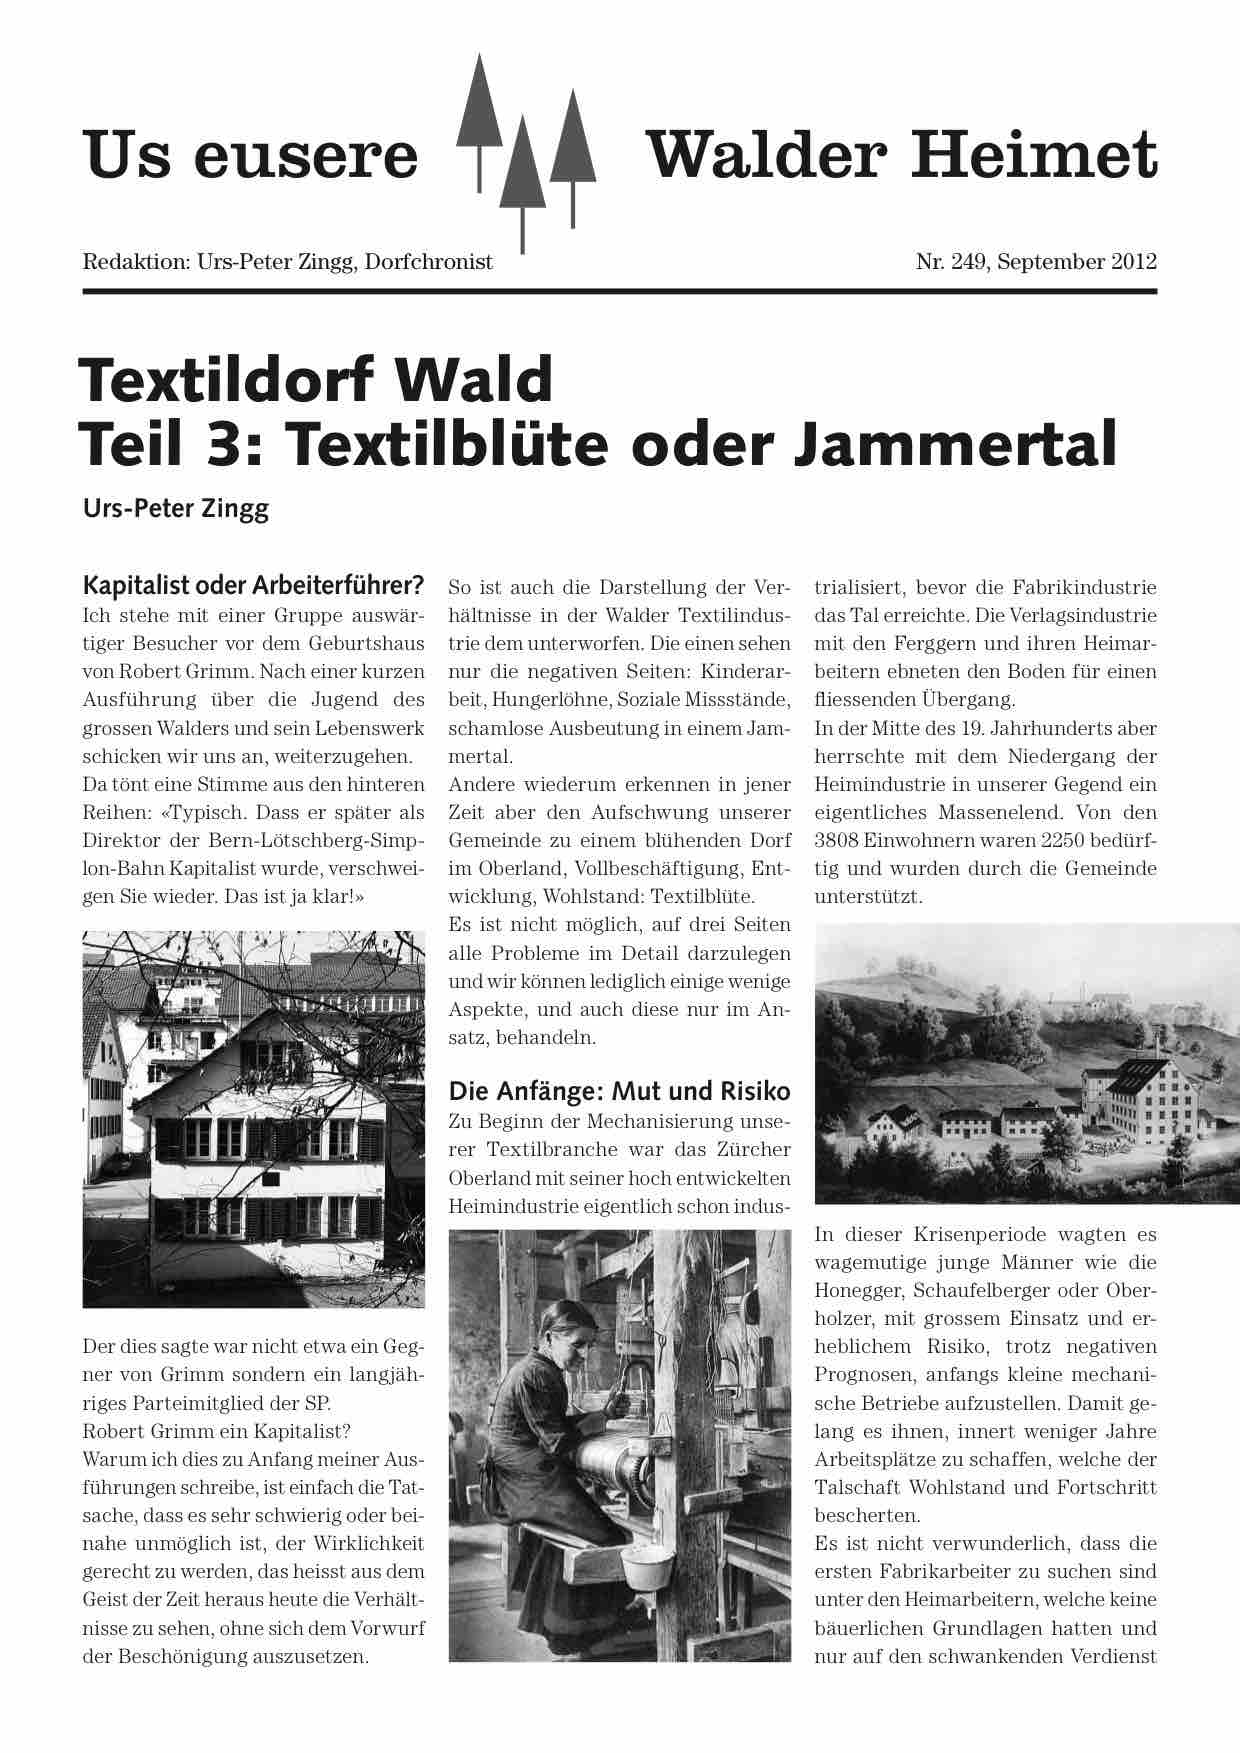 Textildorf (3)